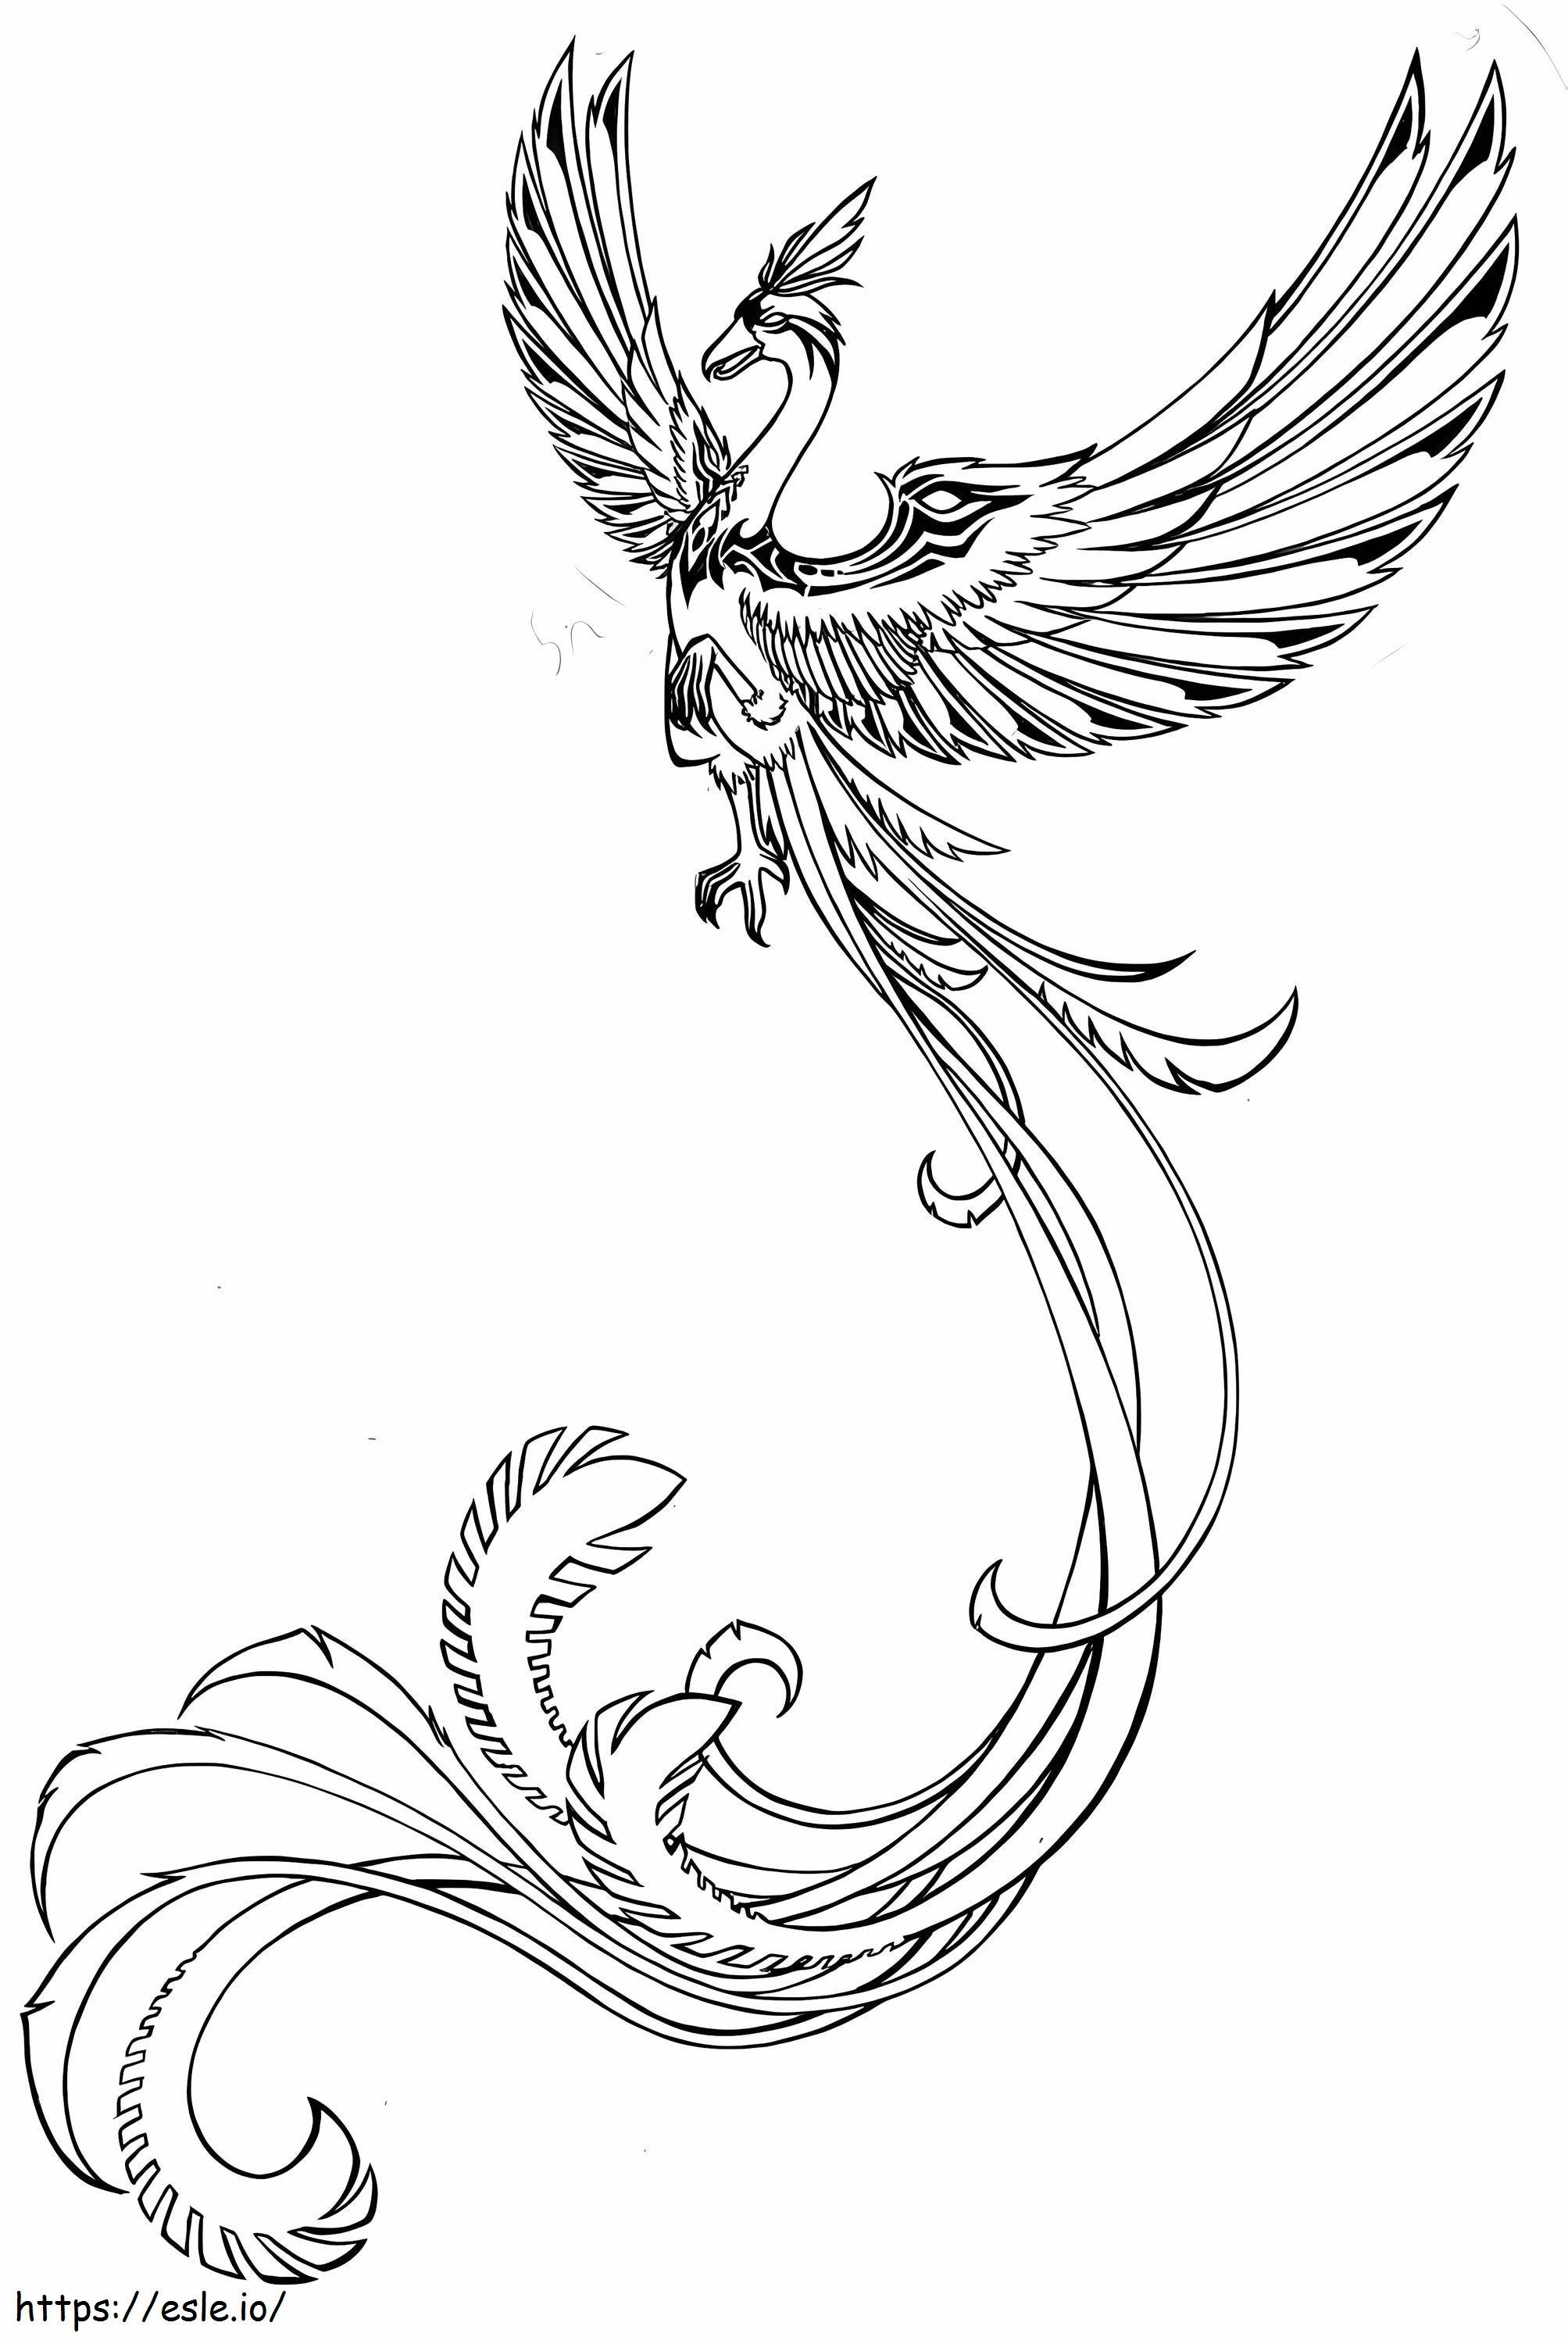 Fantasy Phoenix coloring page